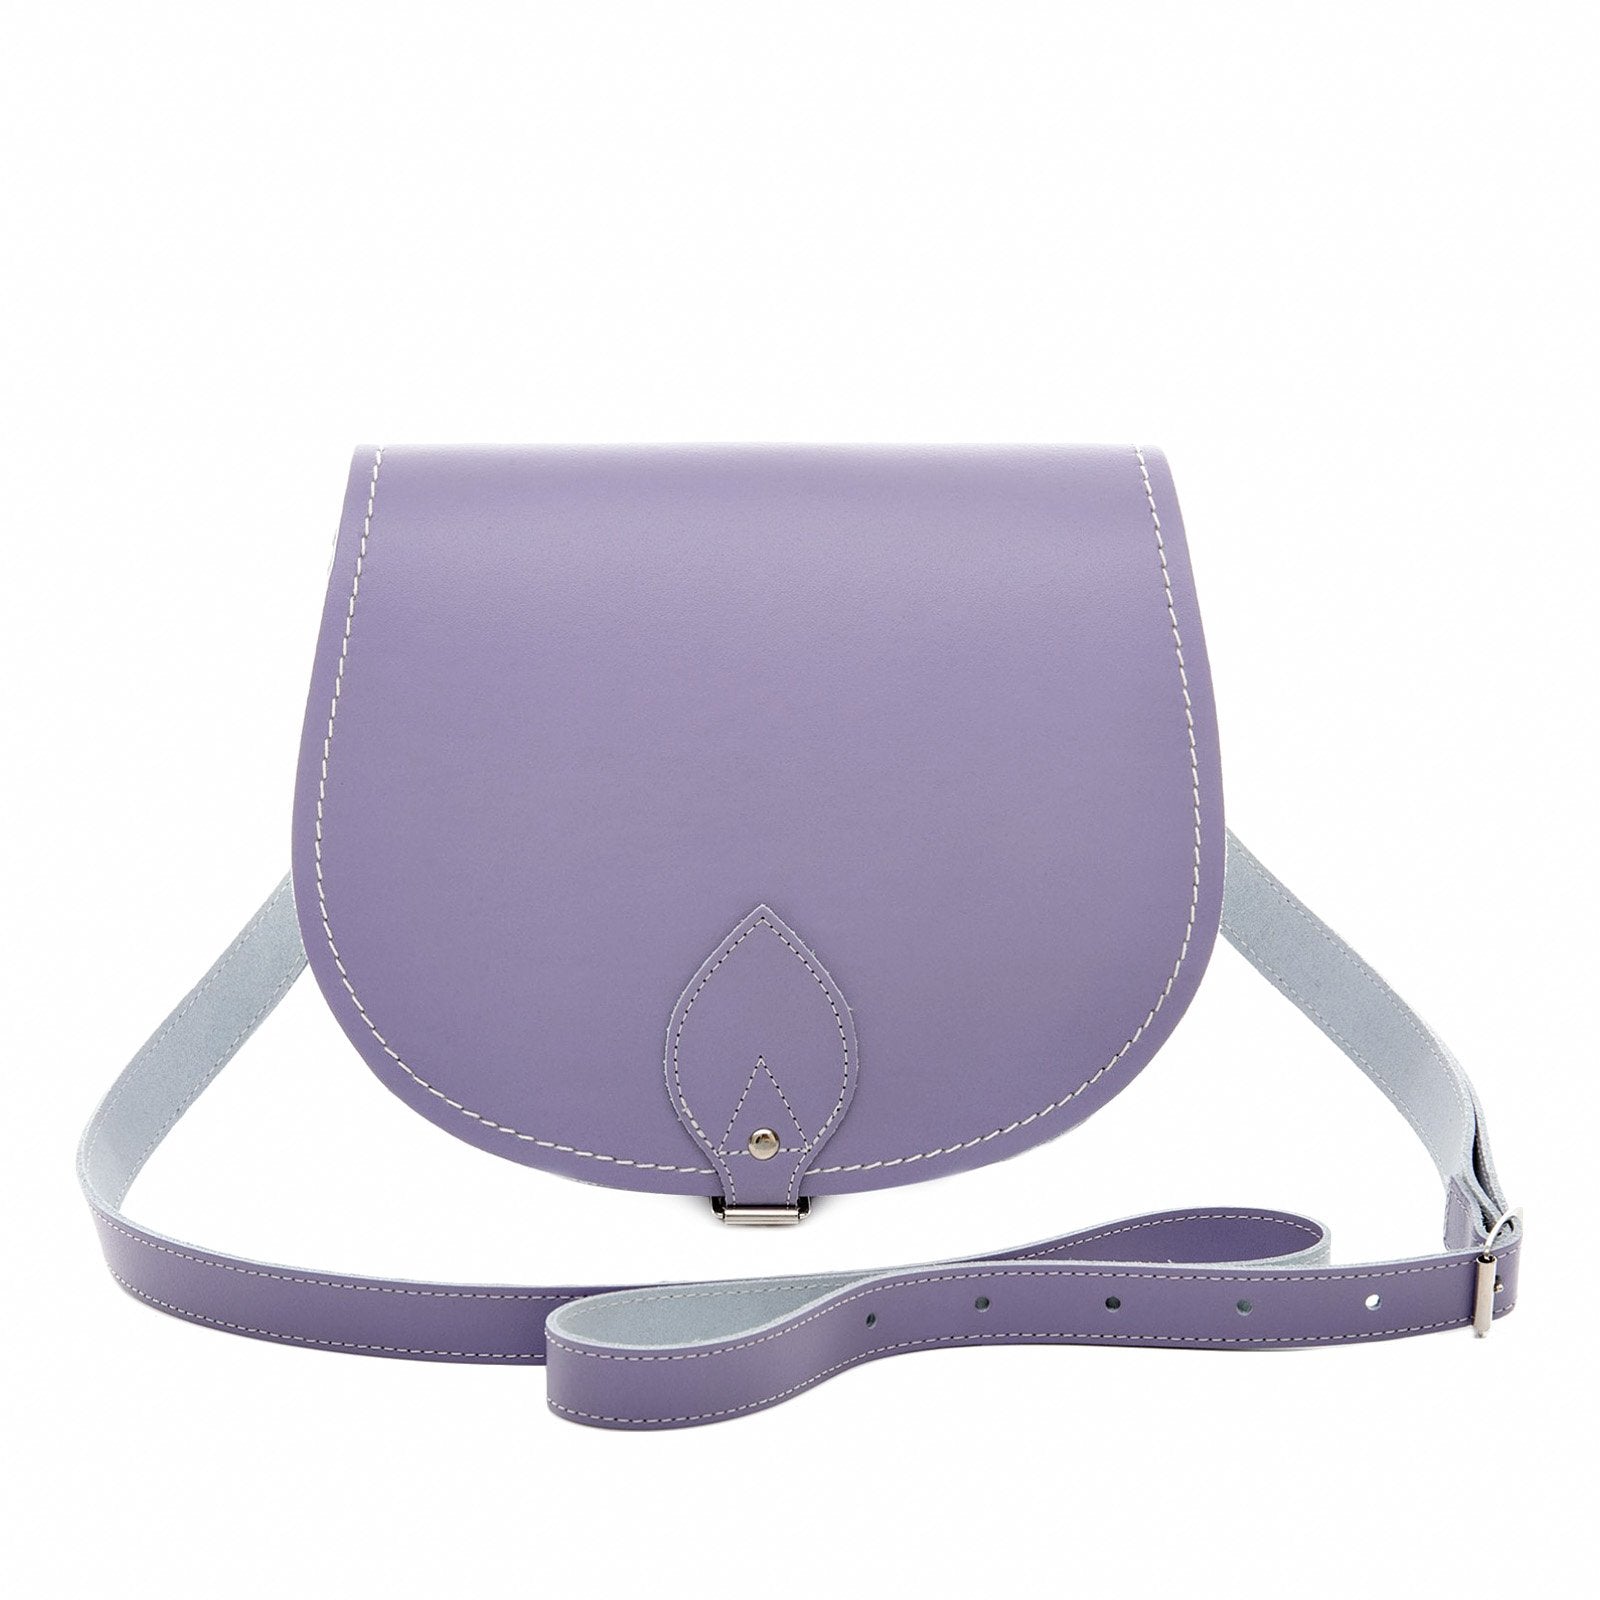 Handmade Leather Saddle Bag - Pastel Violet - Large